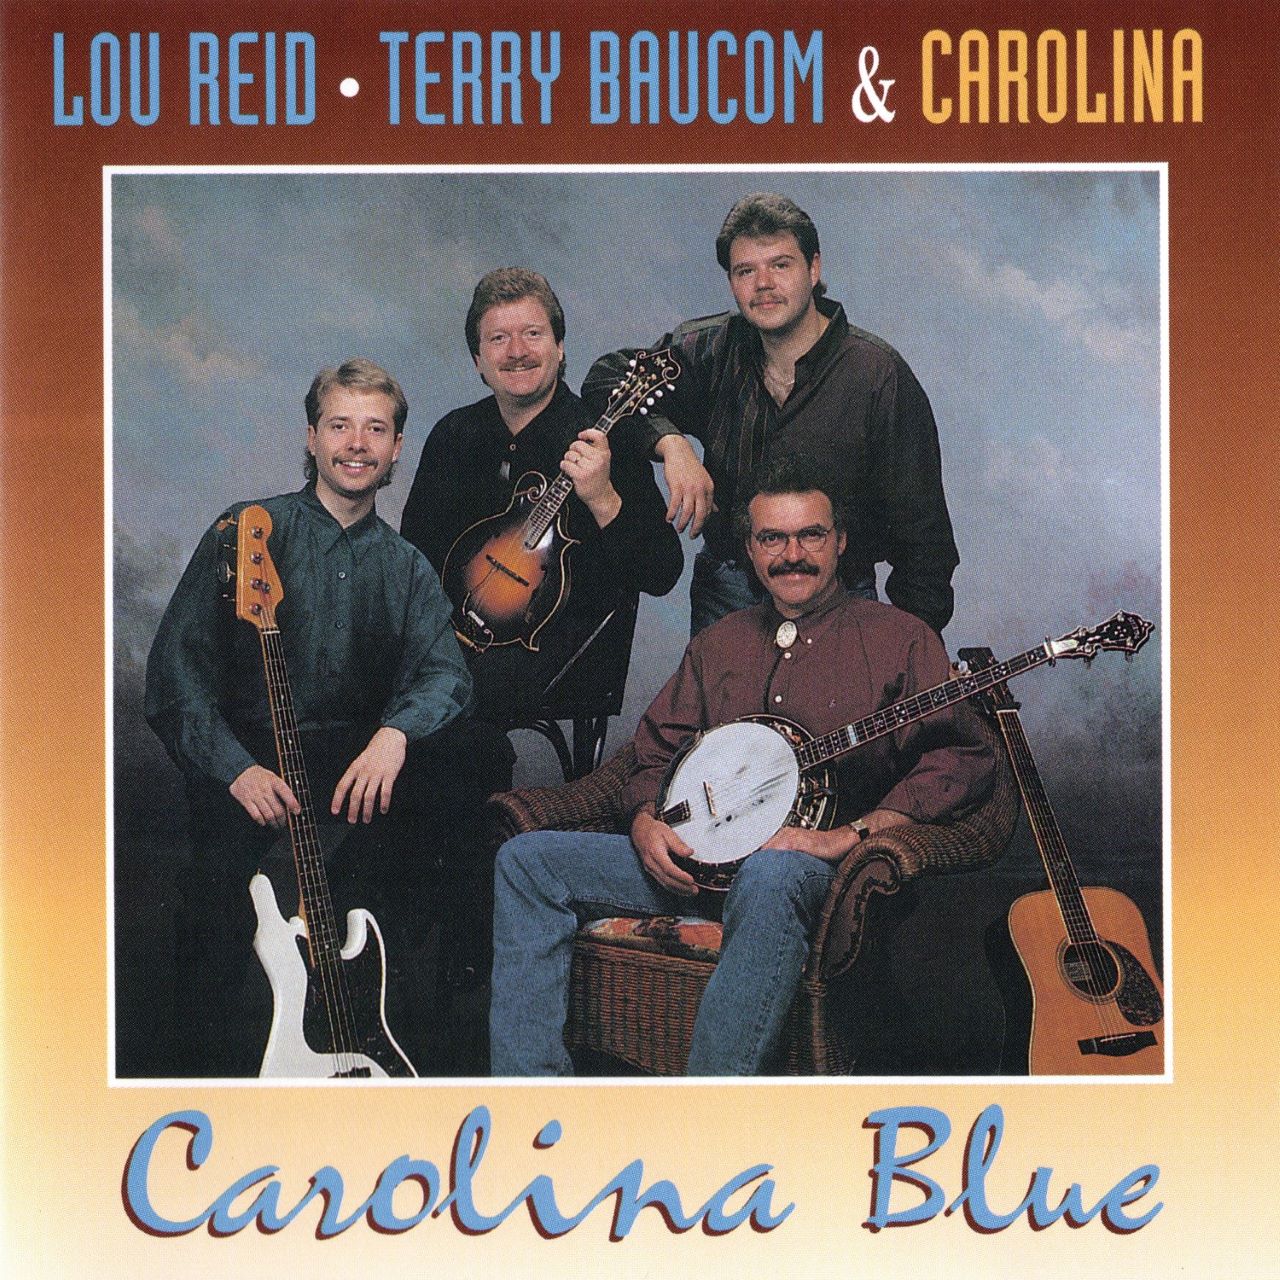 Lou Reid, Terry Baucom & Carolina - Carolina Blue cover album